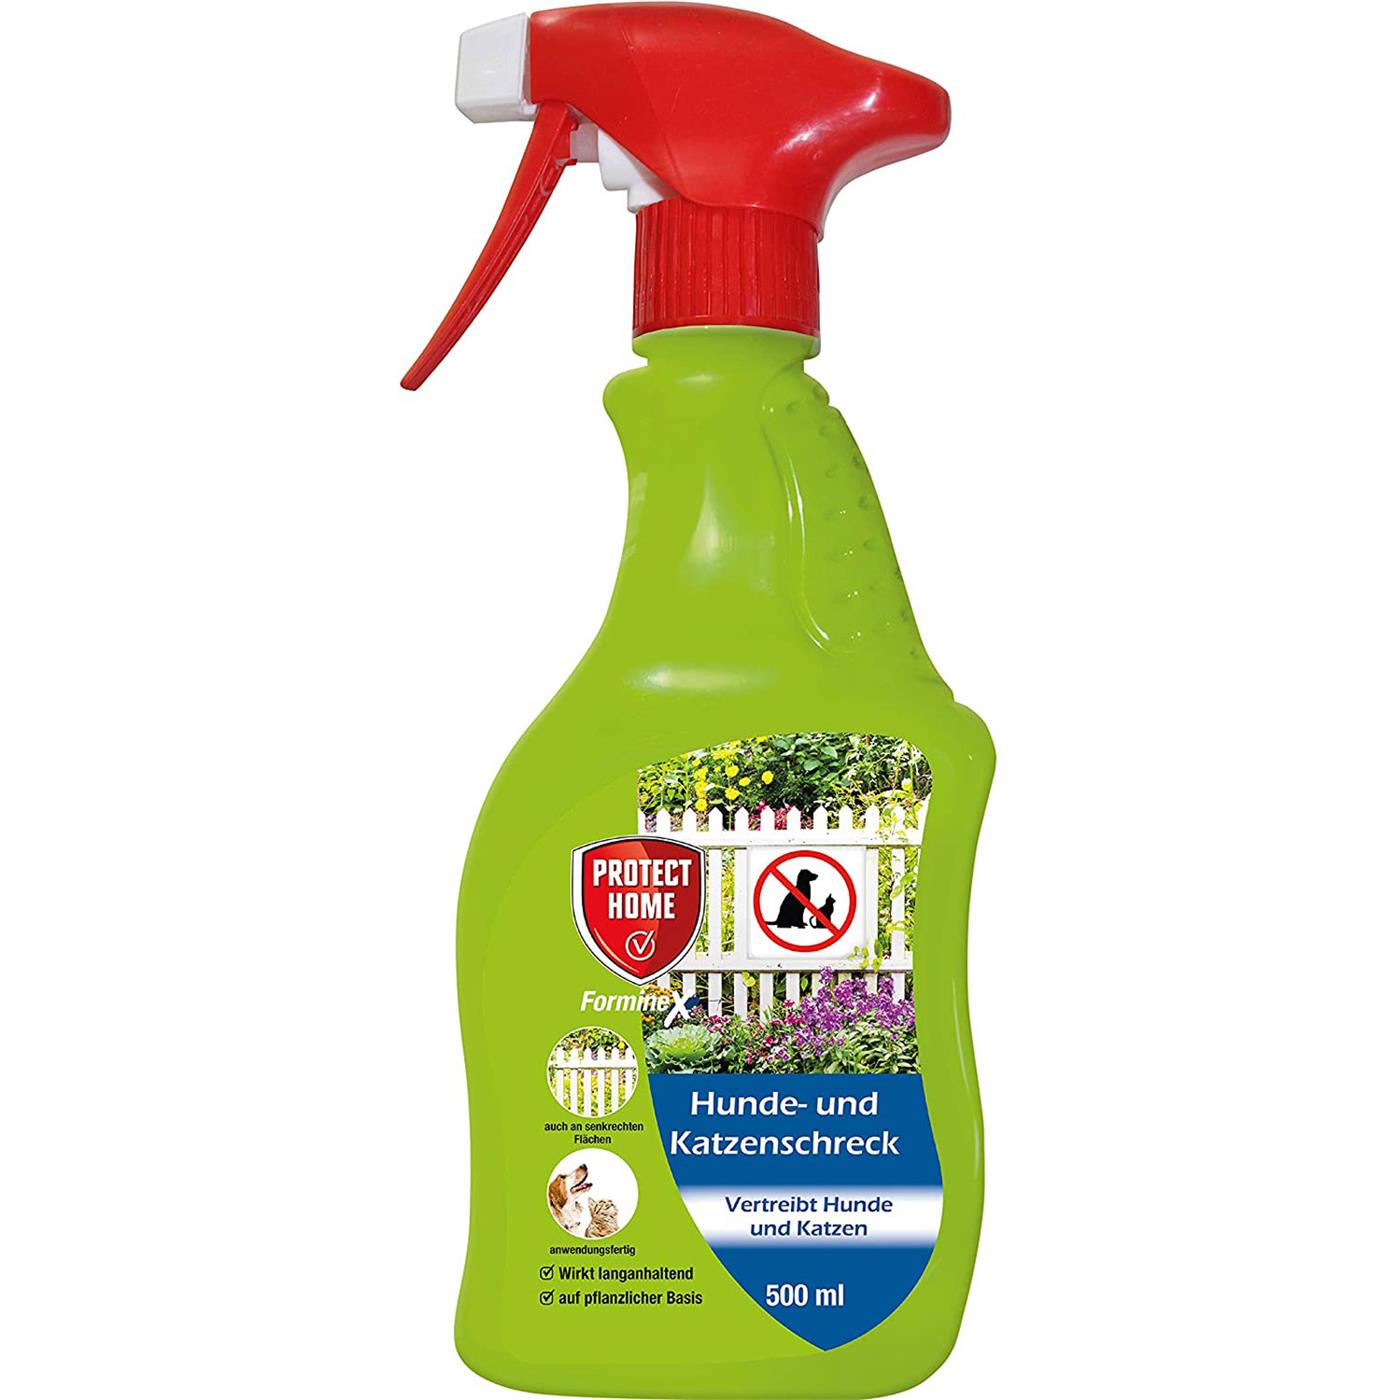 Protect Home Hunde- und Katzenschreck Spray, 500 ml